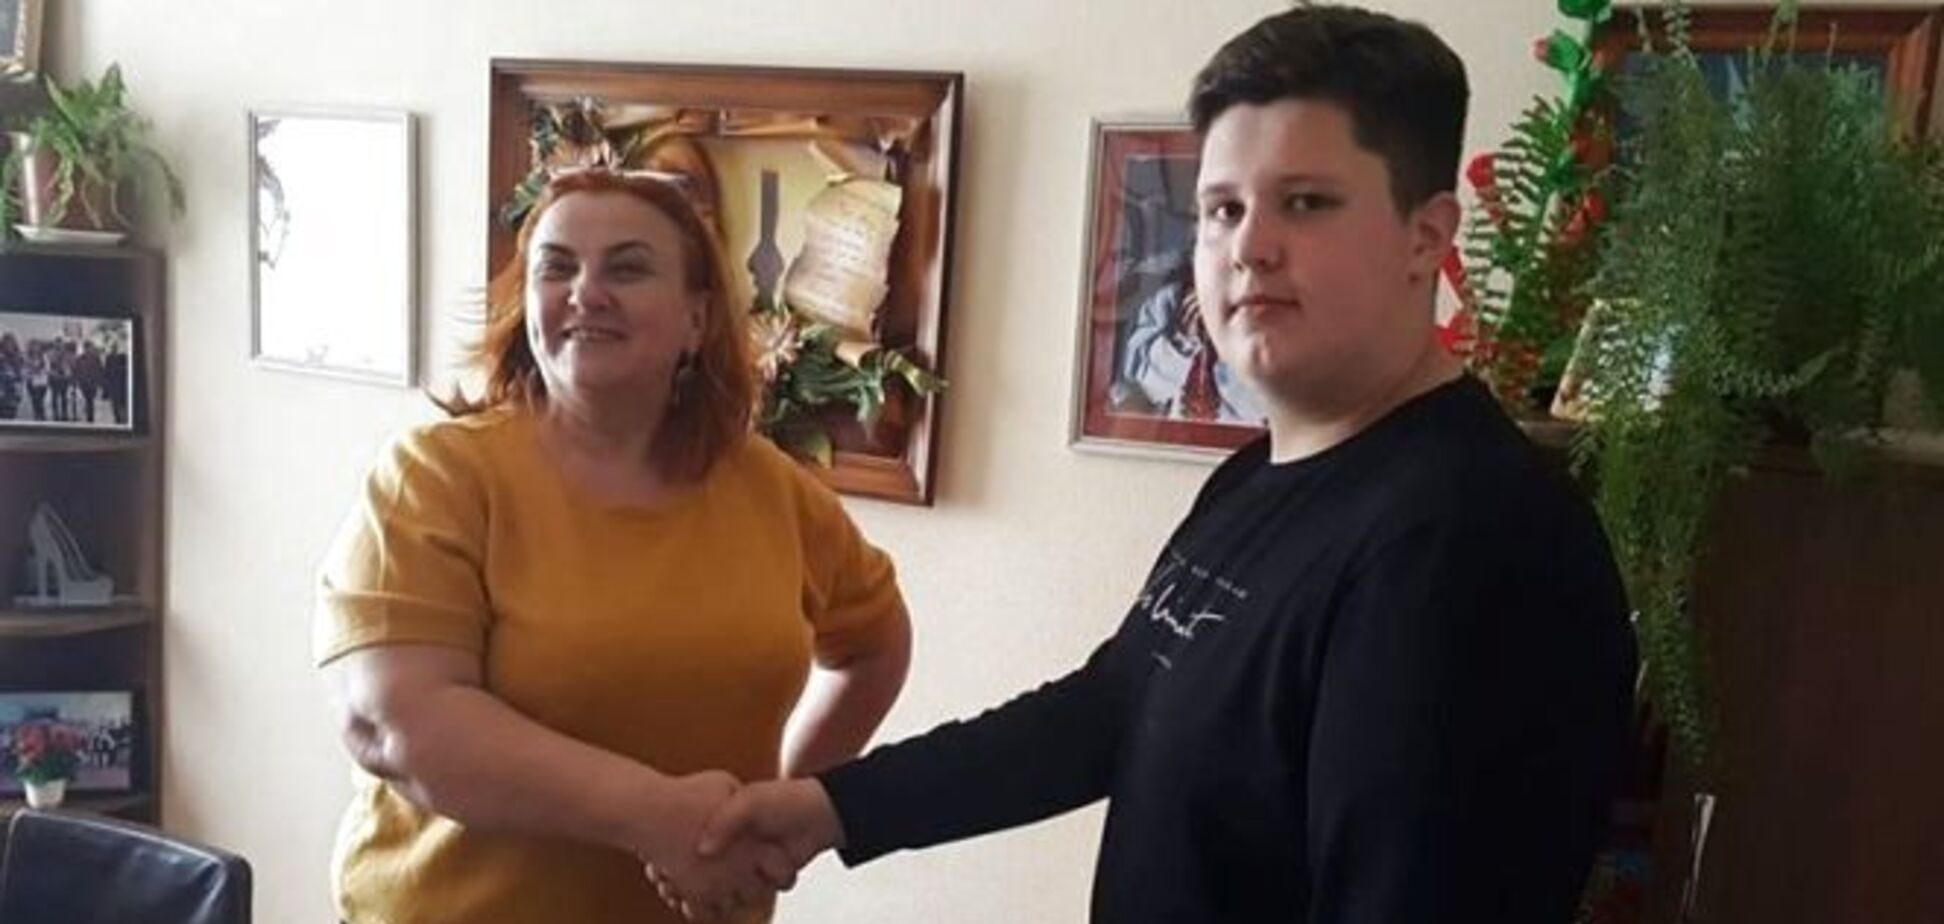 Директор украинской школы заключила пари с учеником на похудение: яркое видео